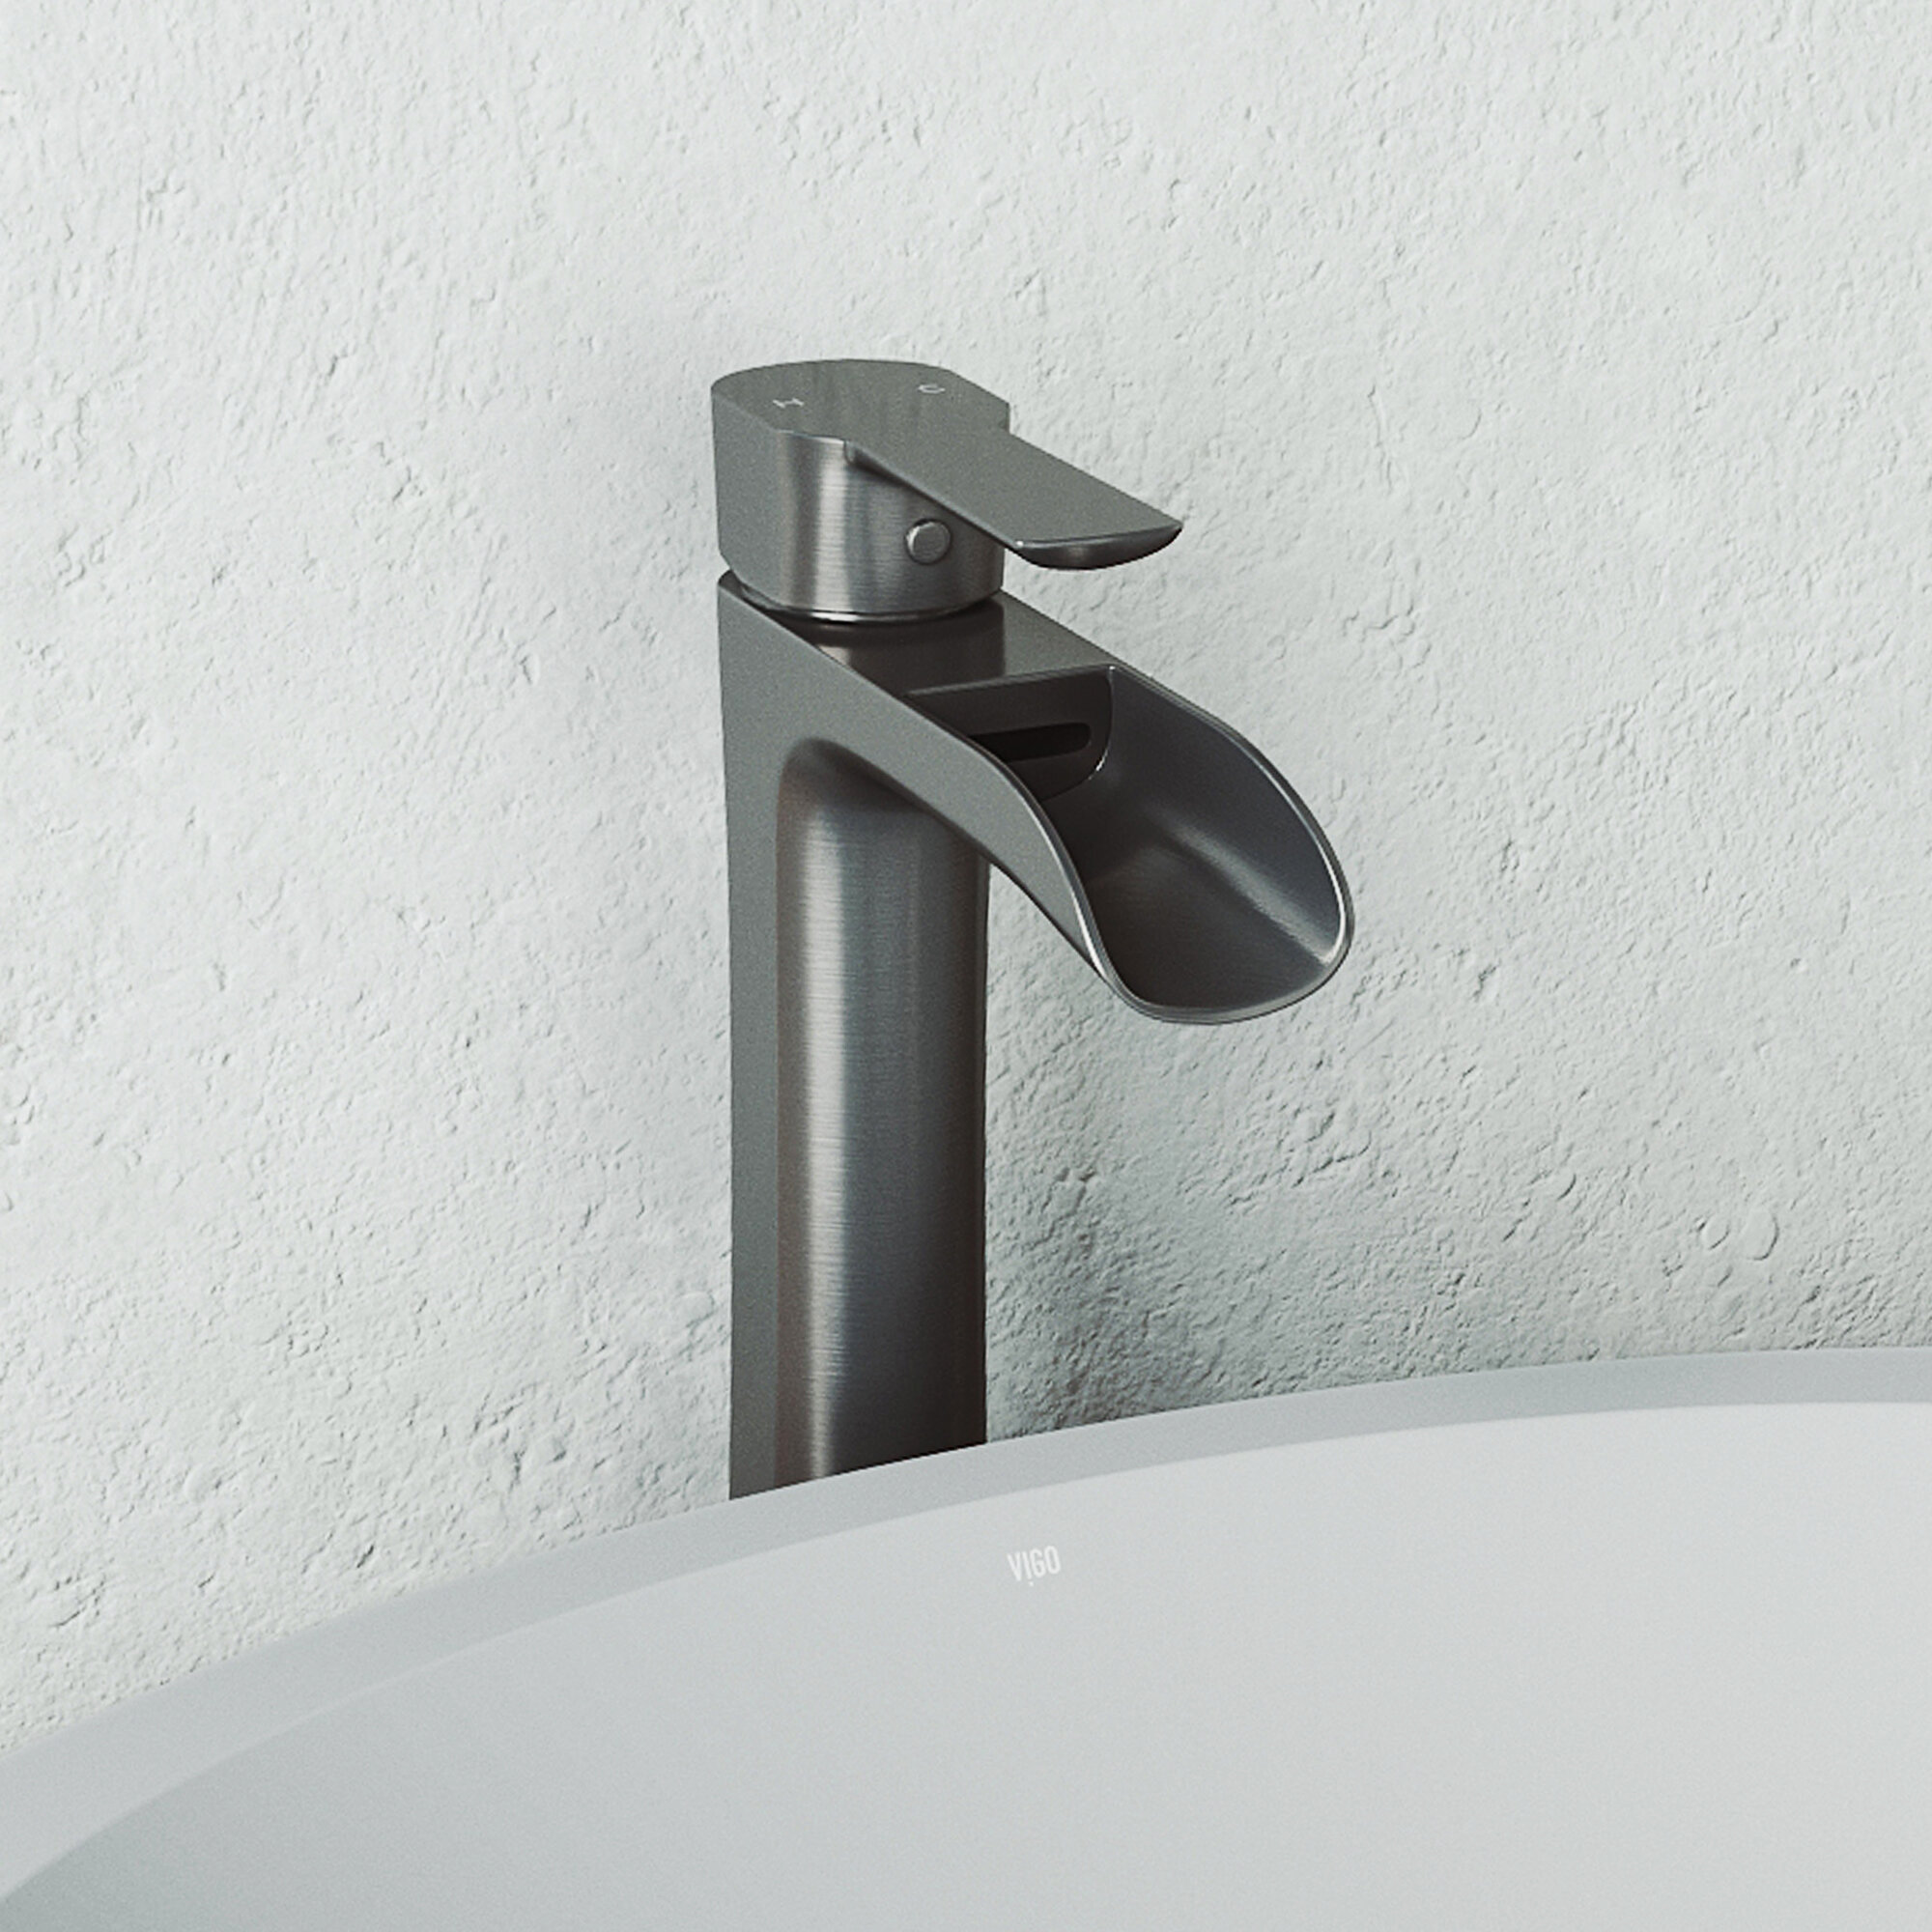 Vigo Niko Vessel Sink Bathroom Faucet Reviews Wayfair